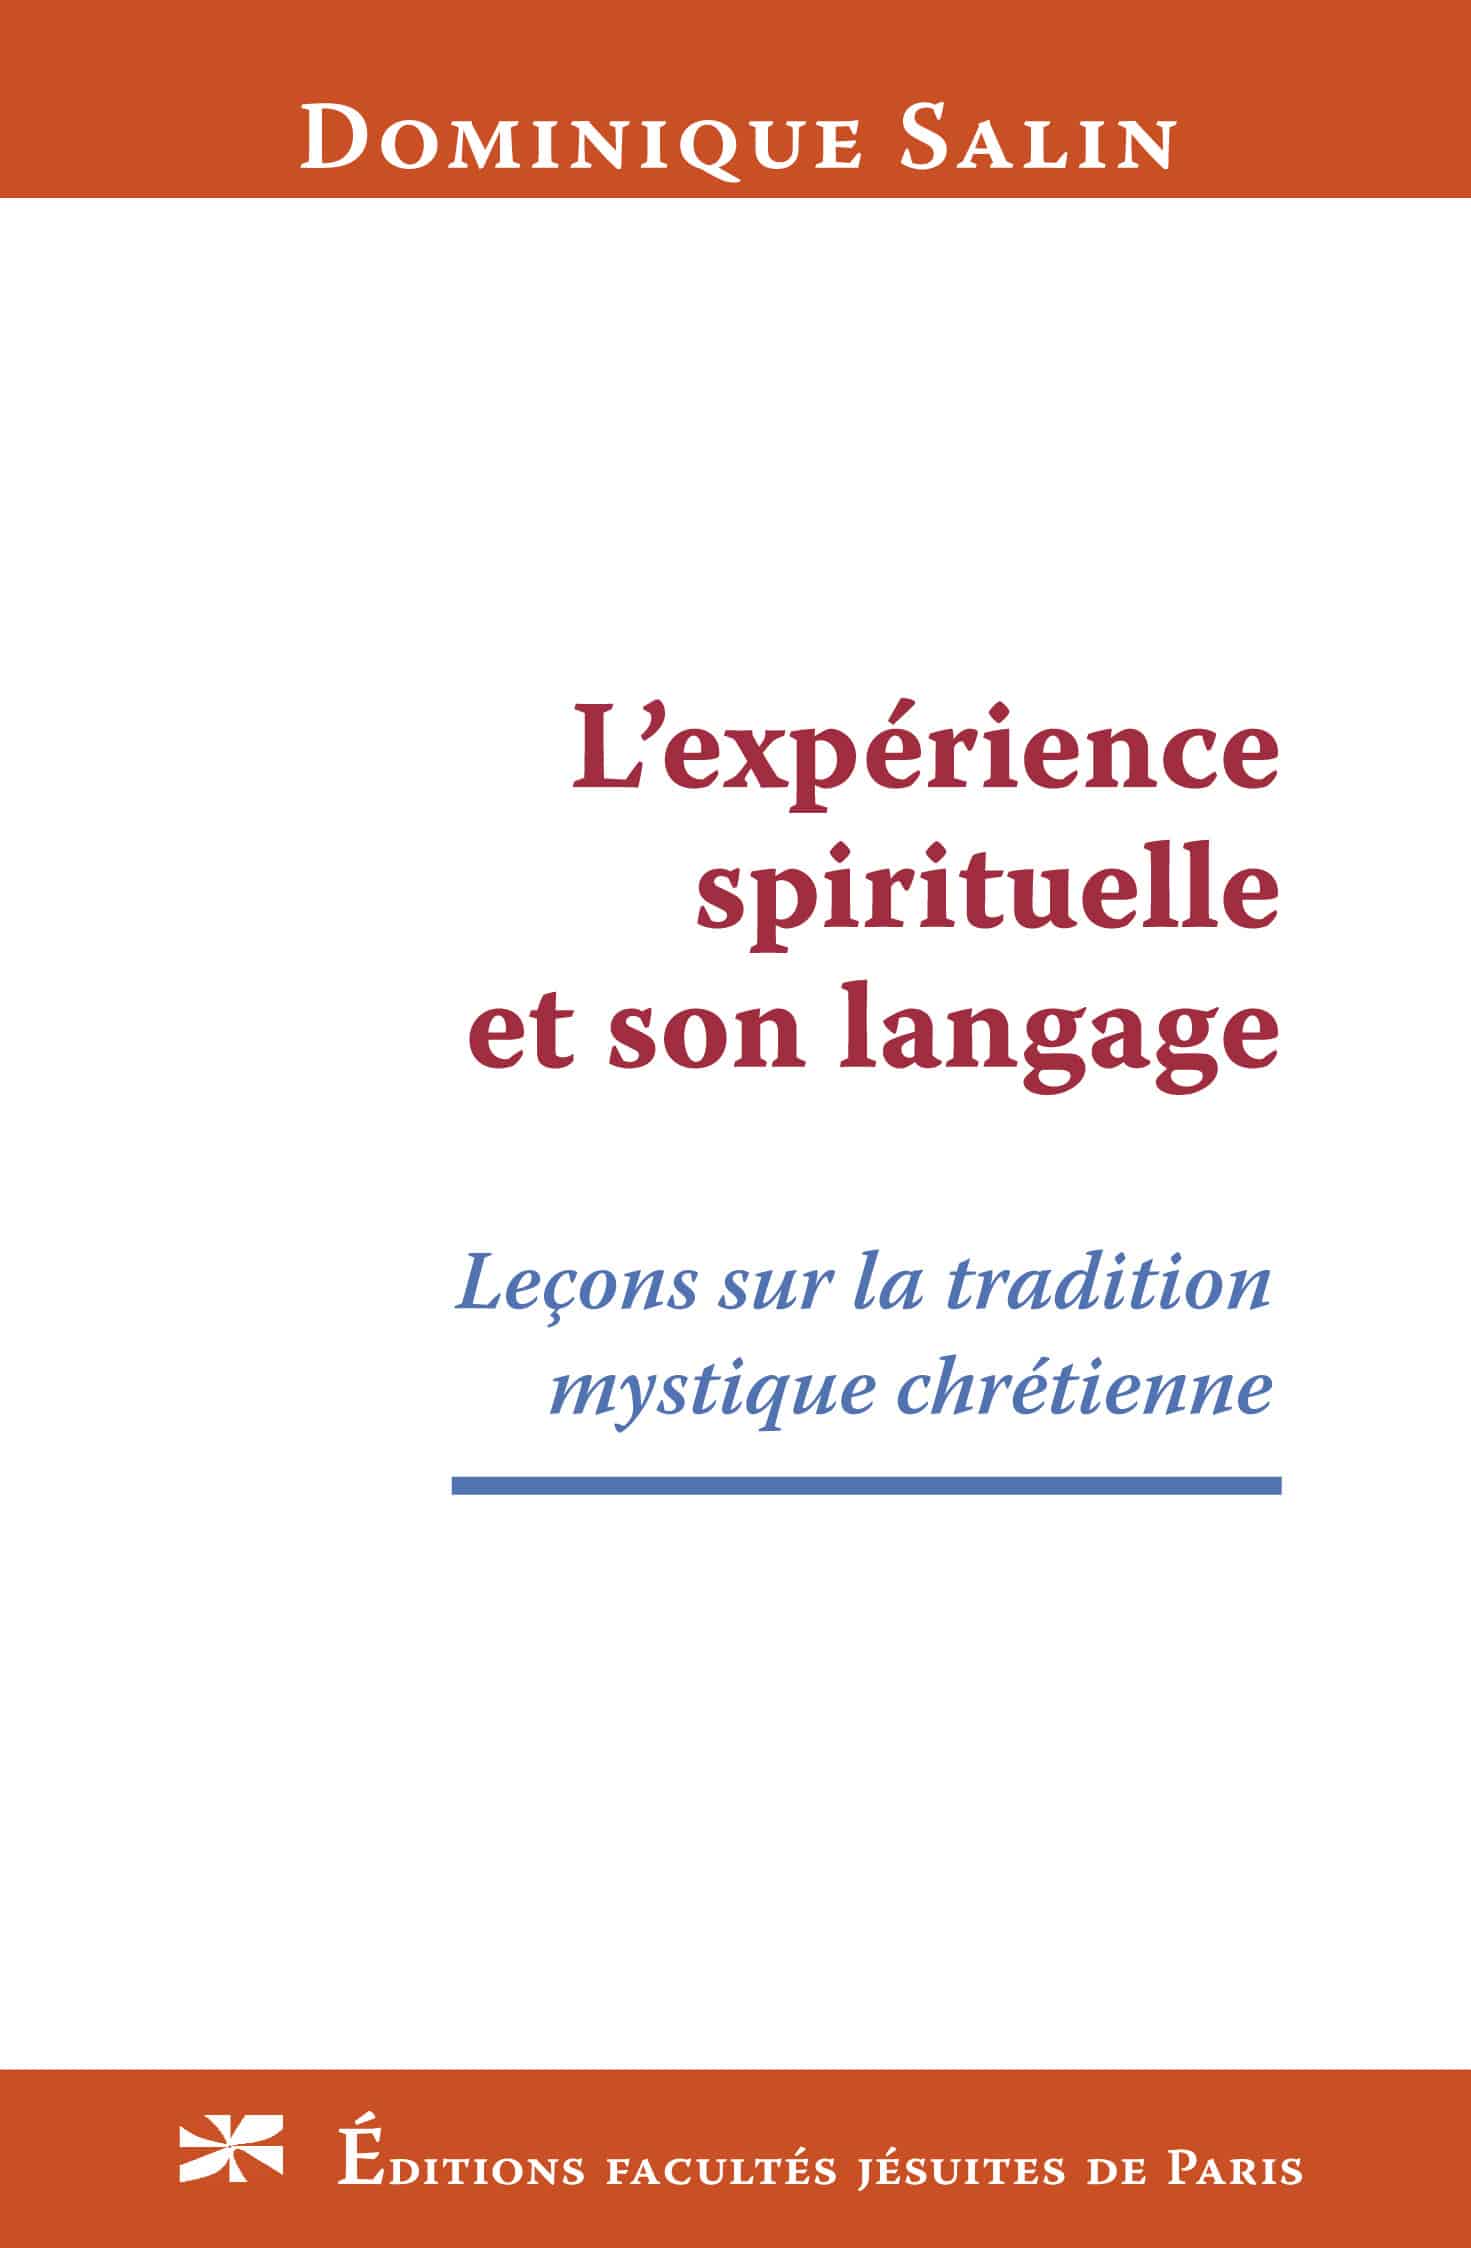 L’expérience spirituelle et son langage. Leçons sur la tradition mystique chrétienne, par Dominique Salin